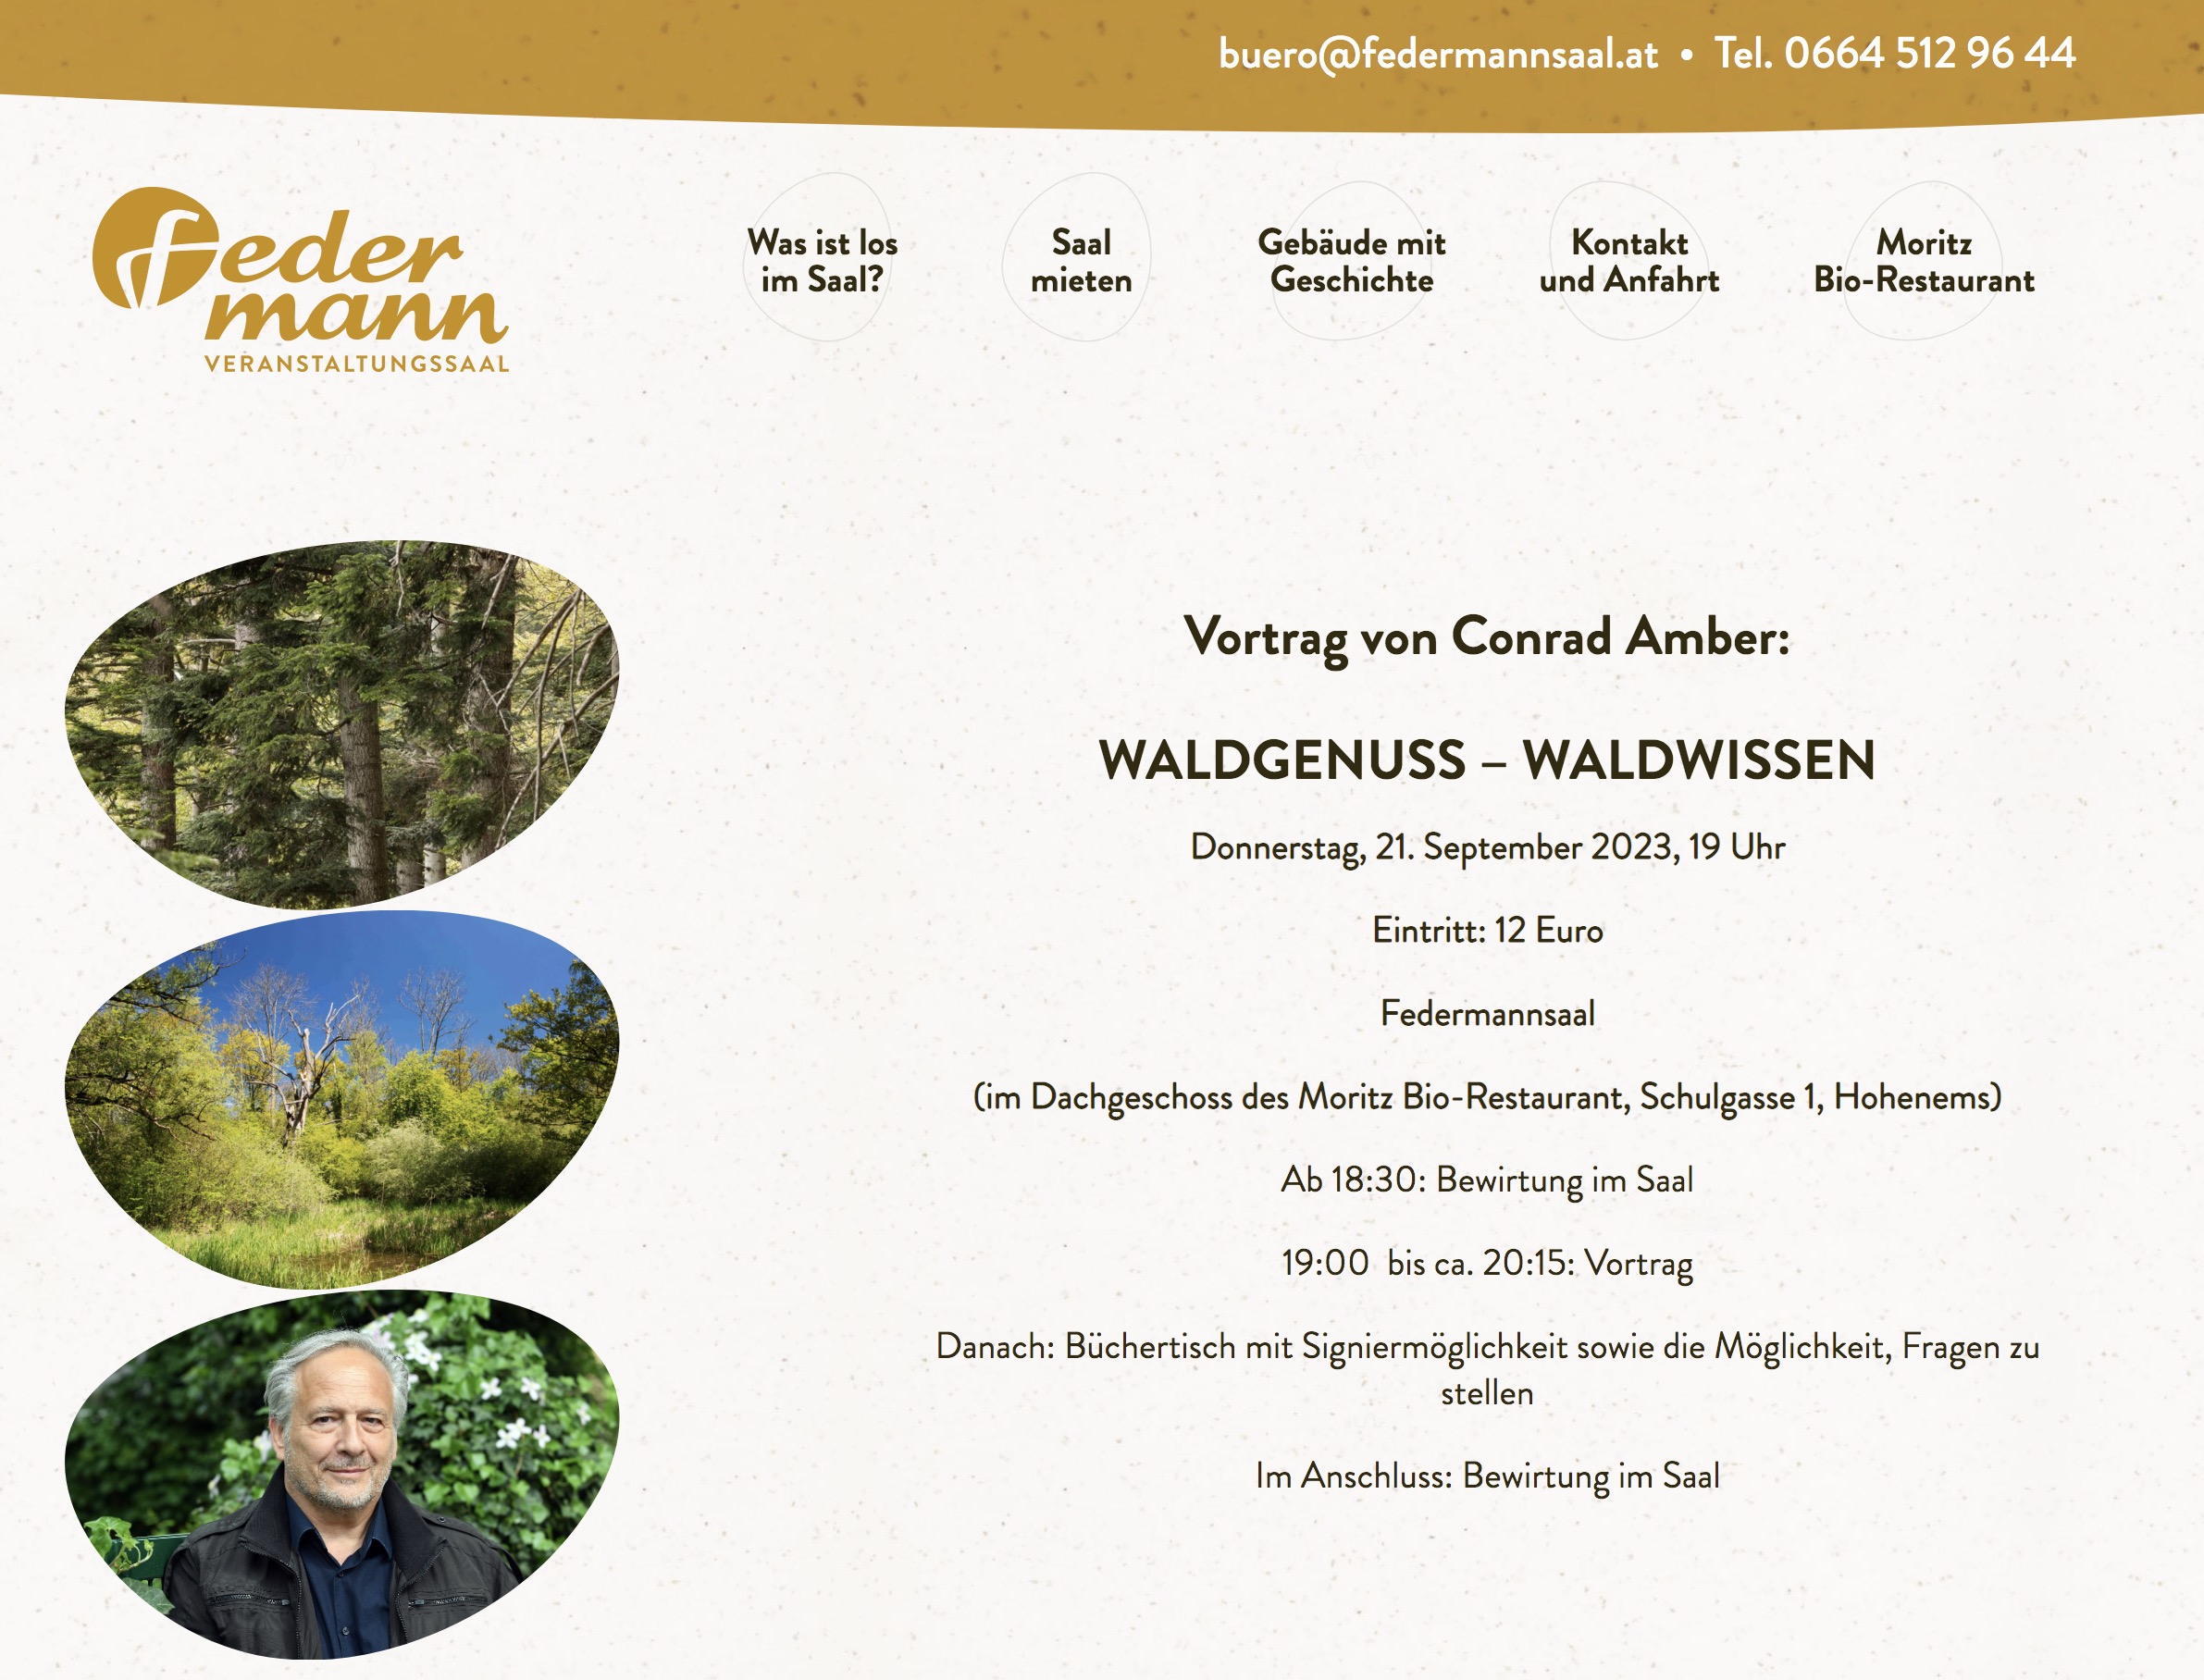 BILDVORTRAG : WALDWISSEN-WALDGENUSS, Hohenems, 21.9.2023